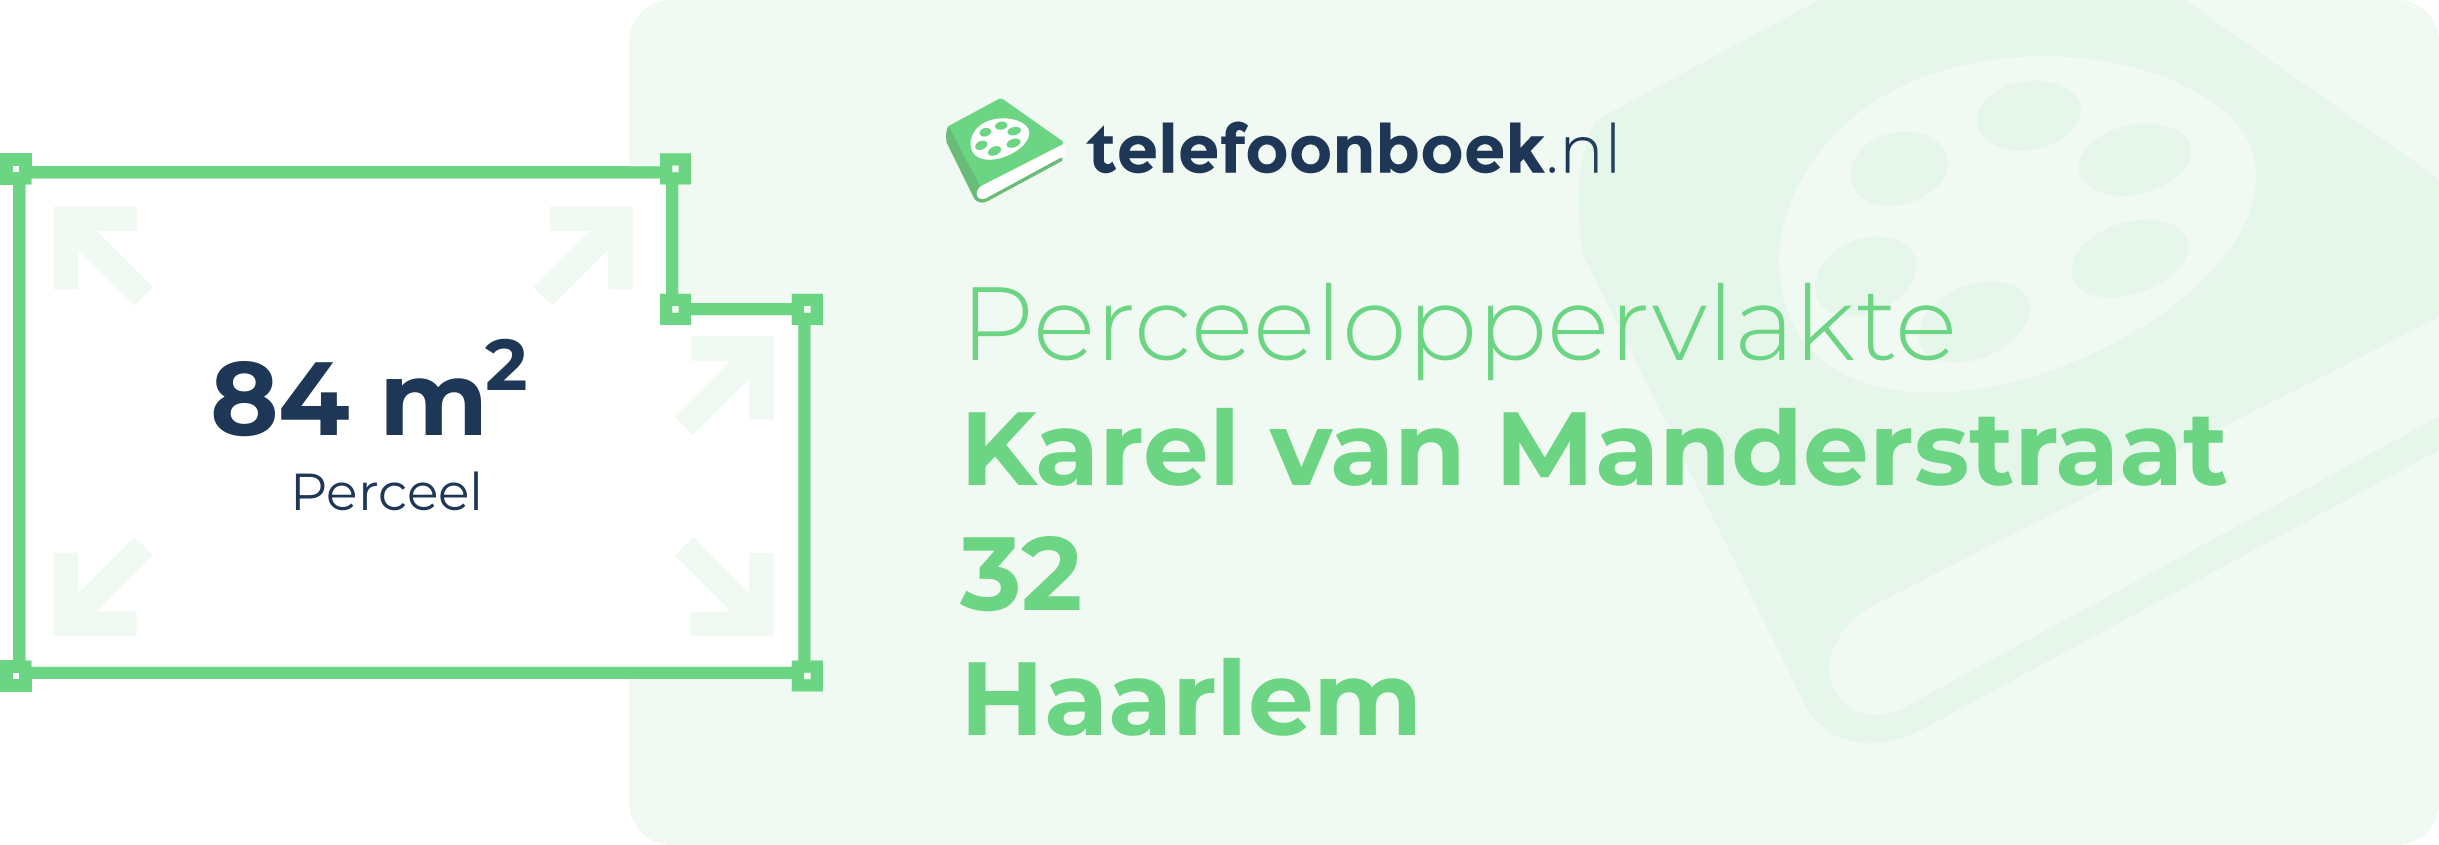 Perceeloppervlakte Karel Van Manderstraat 32 Haarlem